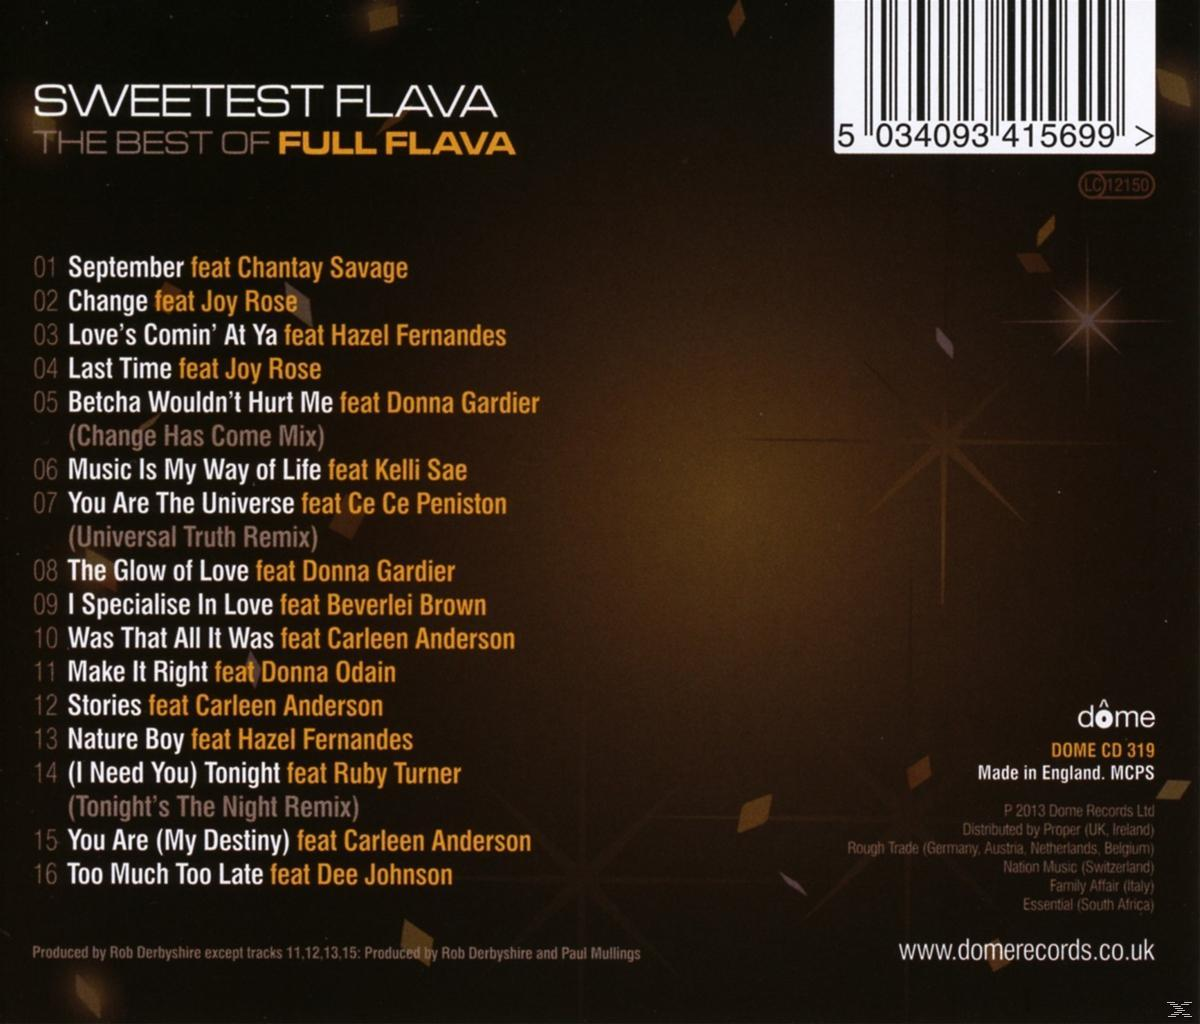 Full Flava - The Sweetest Flava - Best (CD) Flava: Of Full